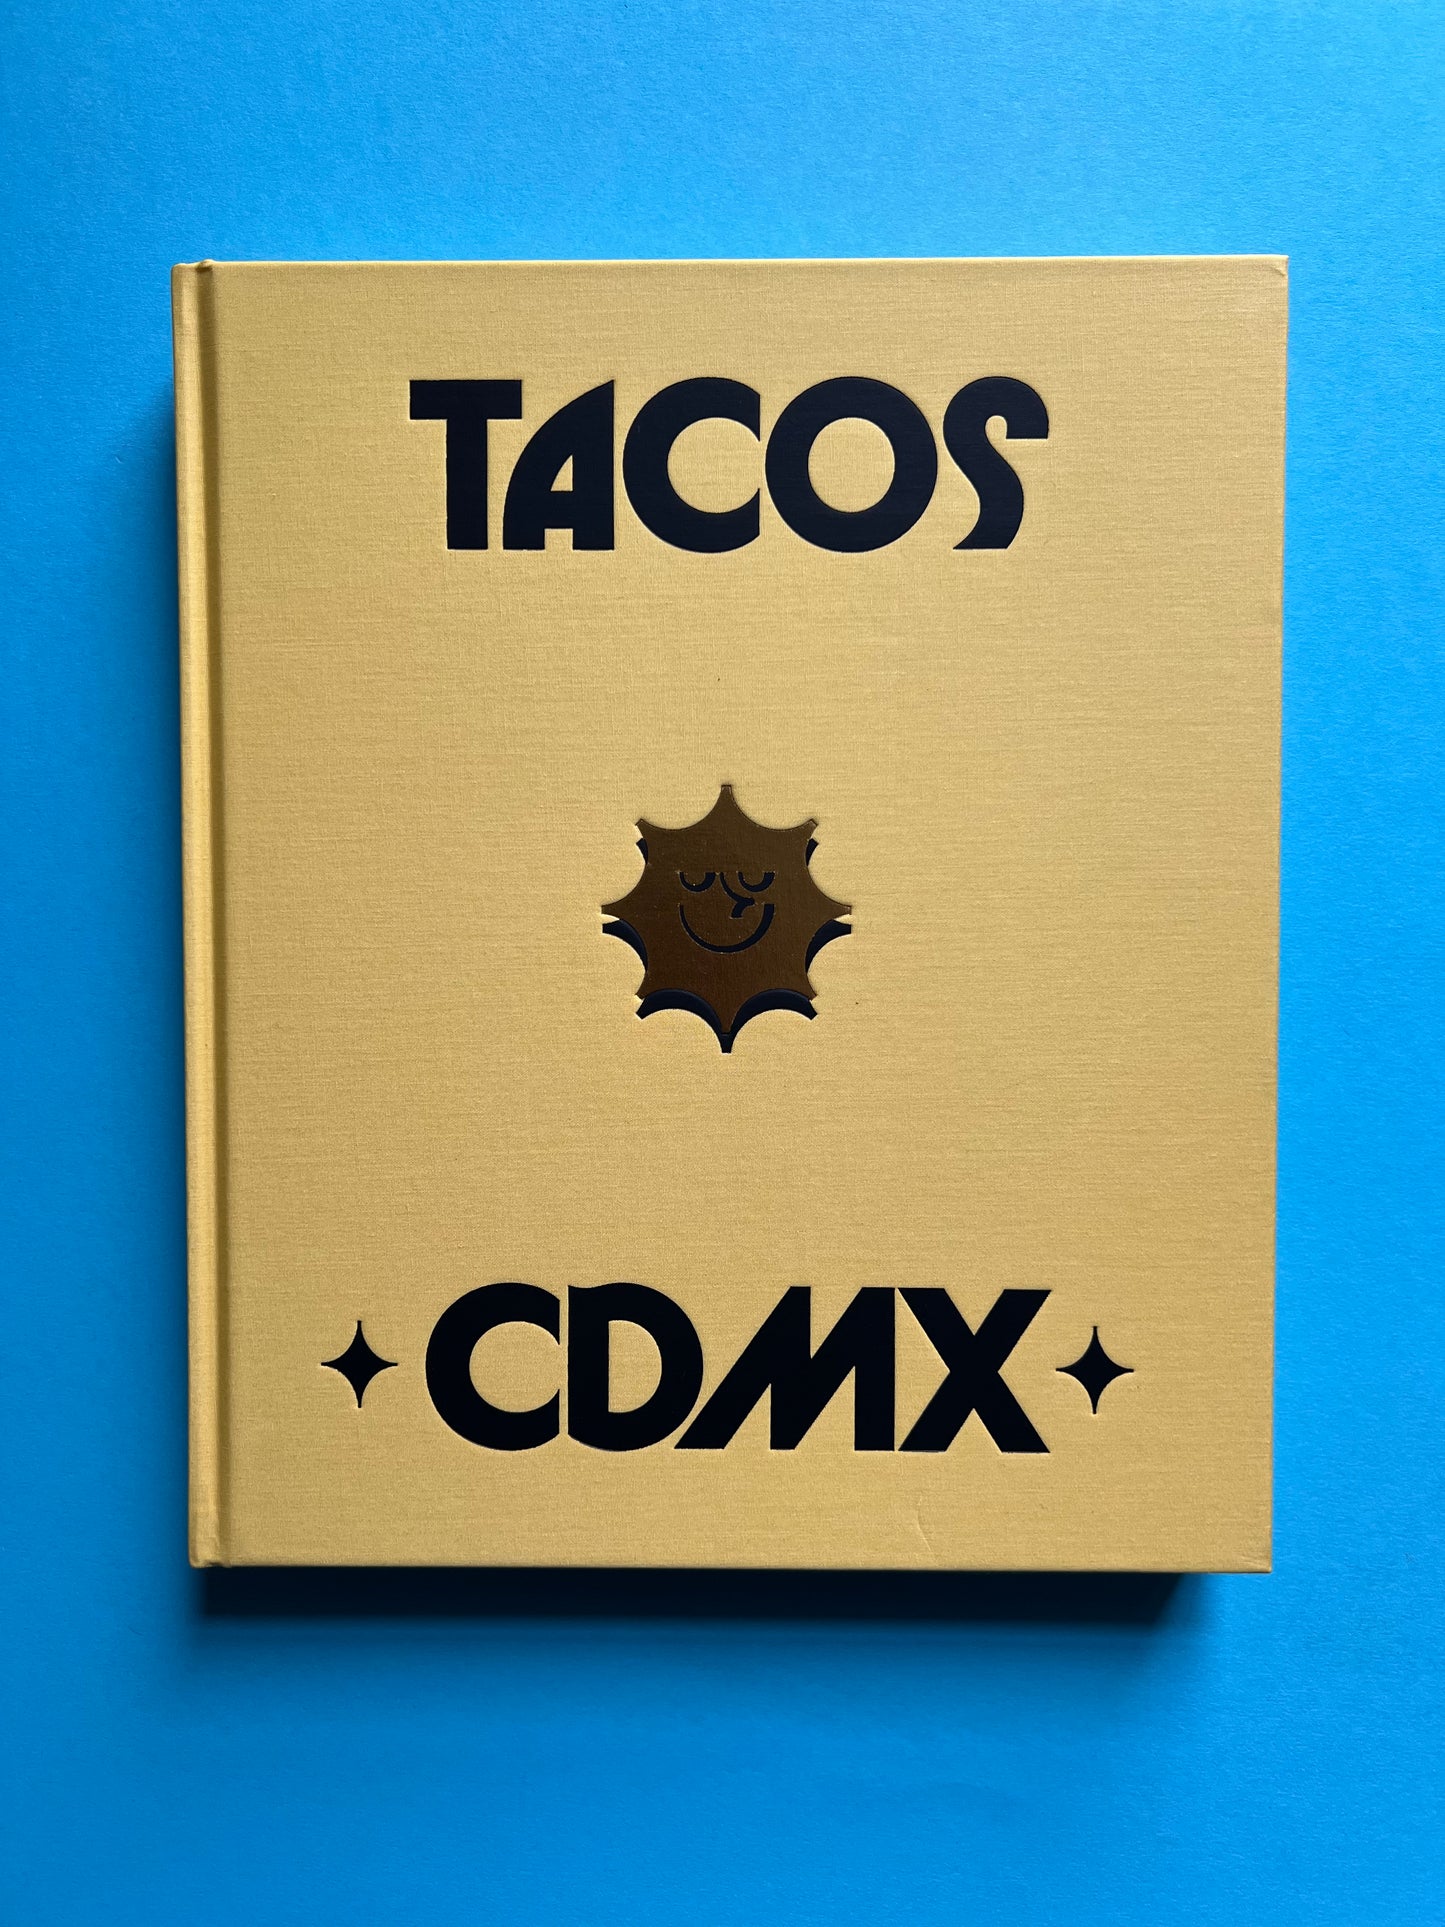 Tacos - CDMX (English)